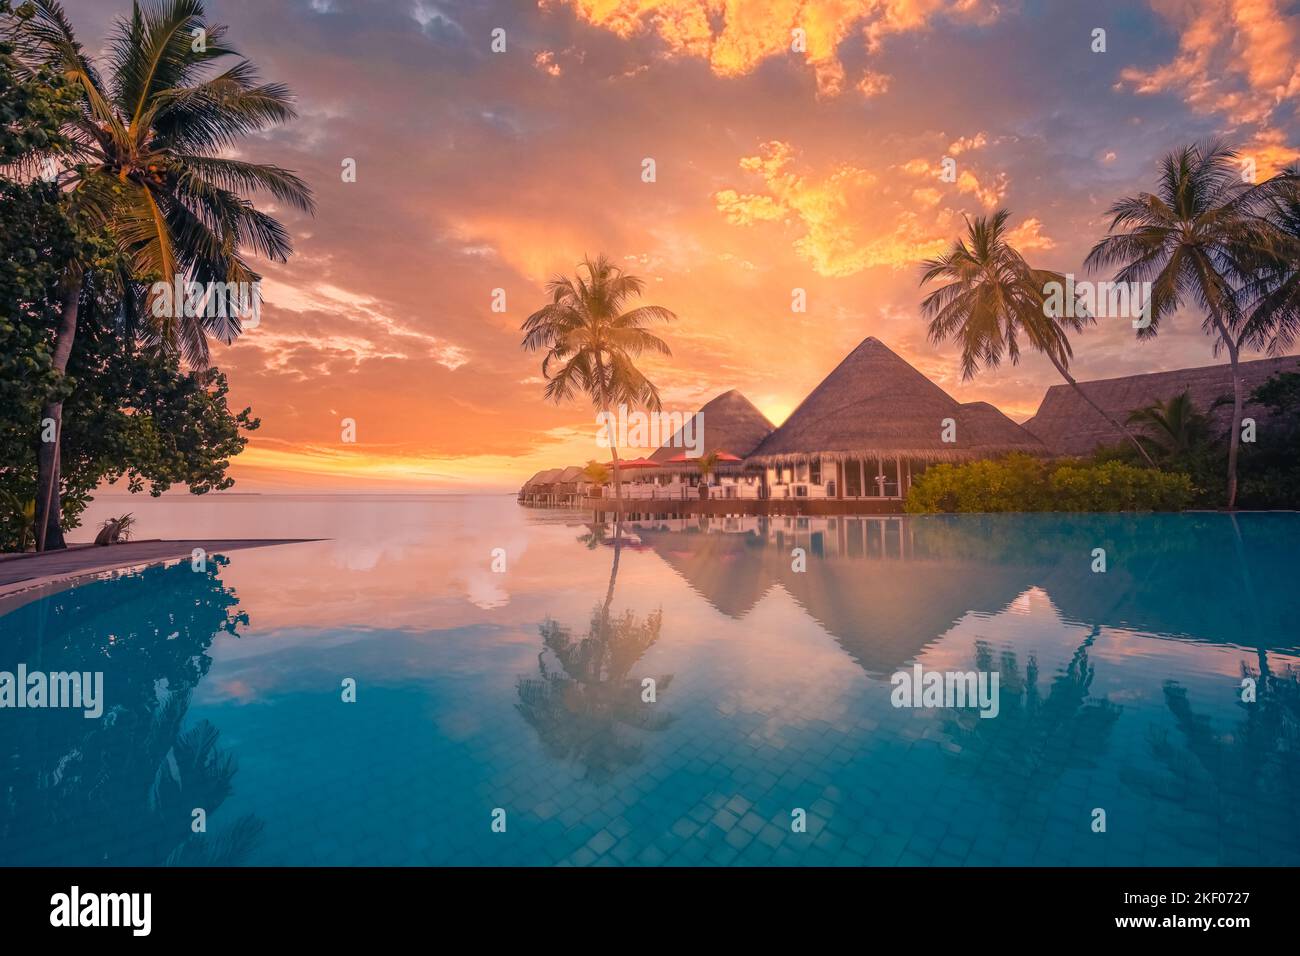 Touristische Landschaft bei Sonnenuntergang. Luxuriöses Strandresort mit Swimmingpool, Reflexionsstrand mit Palmen und Sonnenstrahlen. Ein fantastischer Reisehintergrund Stockfoto